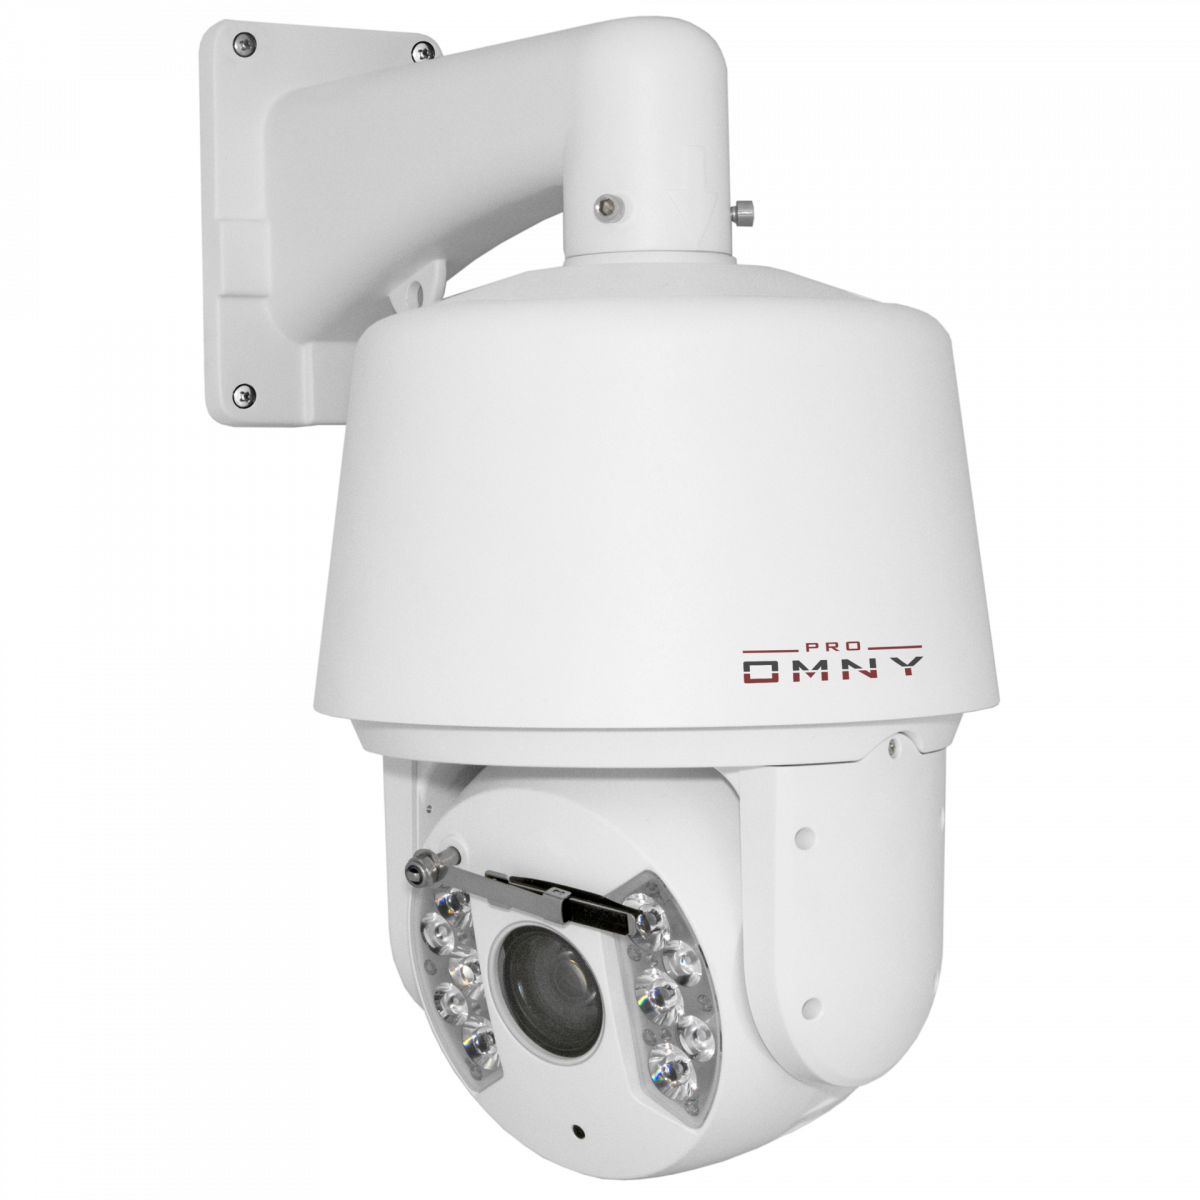 IP камера OMNY 2030-IR PTZ STARLIGHT cкоростная купольная поворотная 2.0Мп с 30х оптическим увеличением c ИК подсветкой,с аналитикой, 24V AC